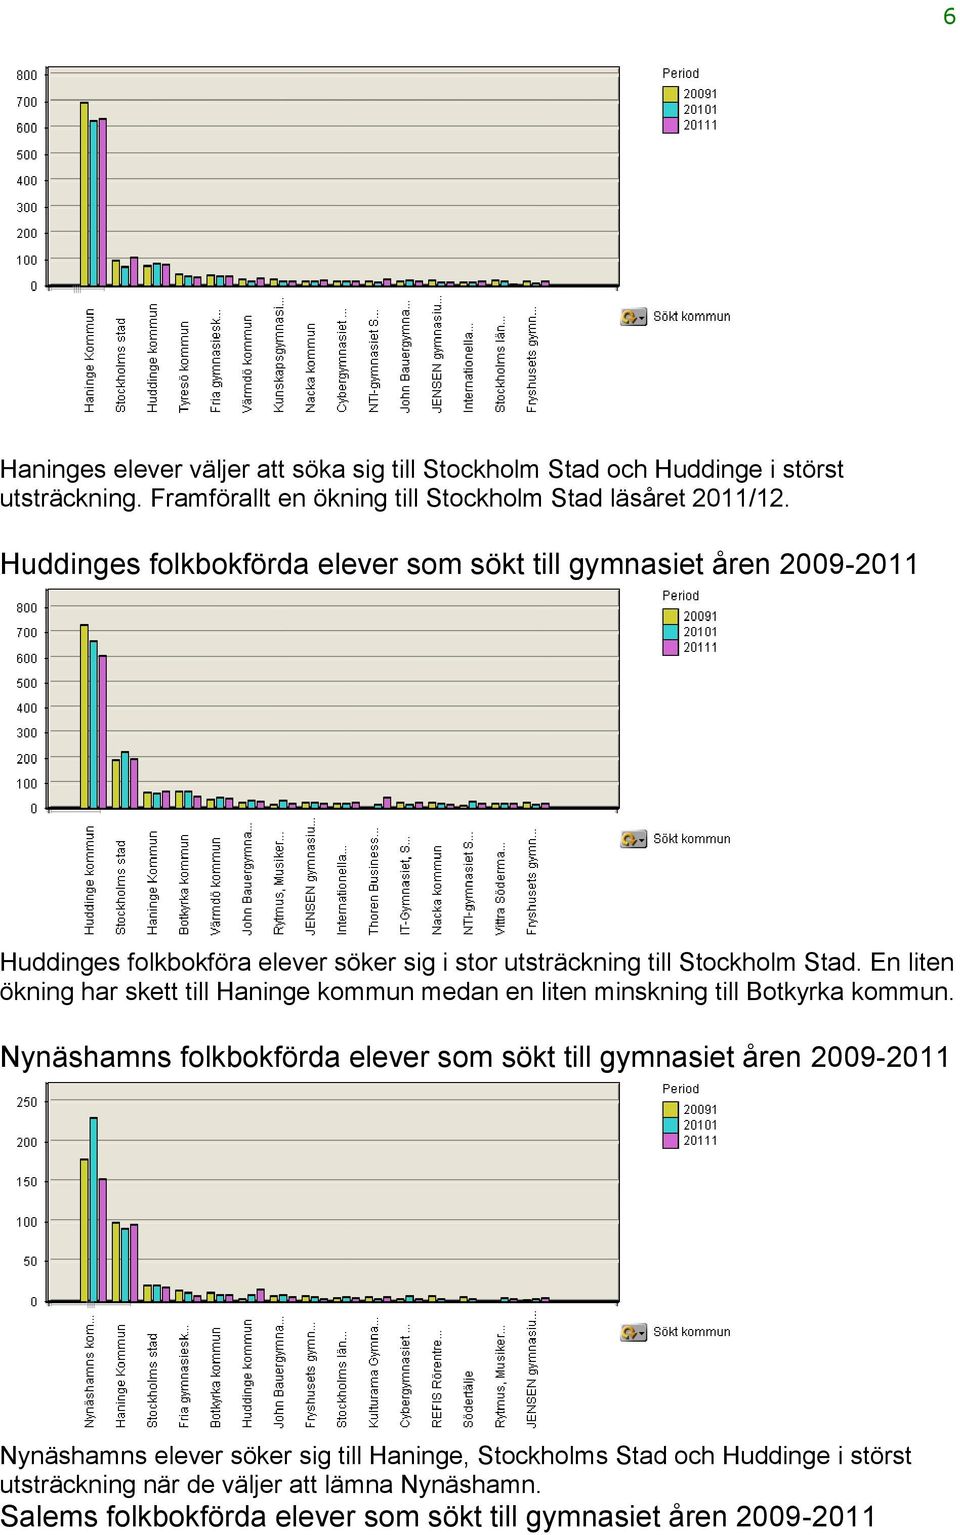 En liten ökning har skett till Haninge kommun medan en liten minskning till Botkyrka kommun.